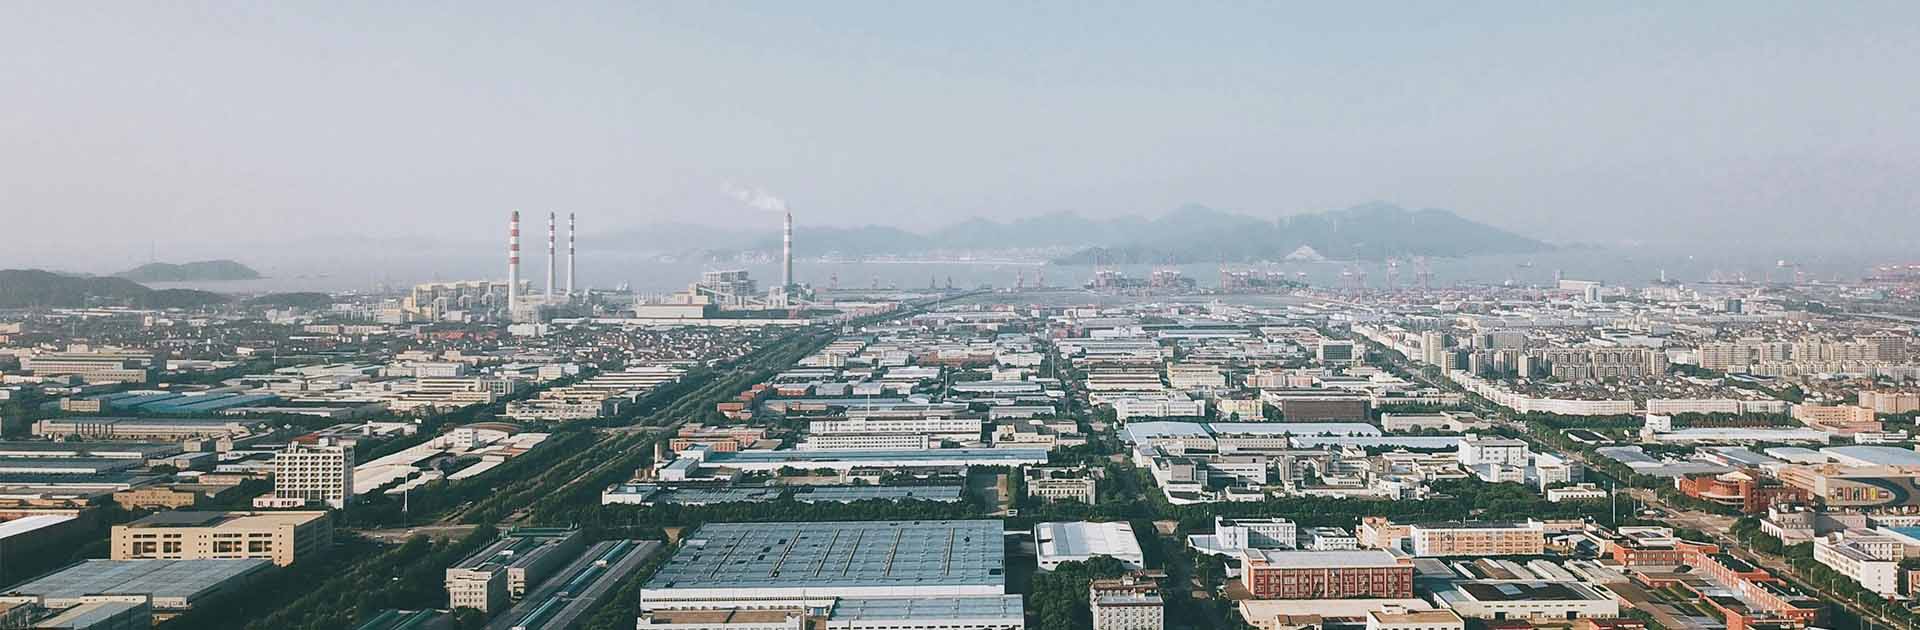 Ciudad de Ningbo Shi, situada en China. Fondo: Distribución industrial de la ciudad con chimeneas.